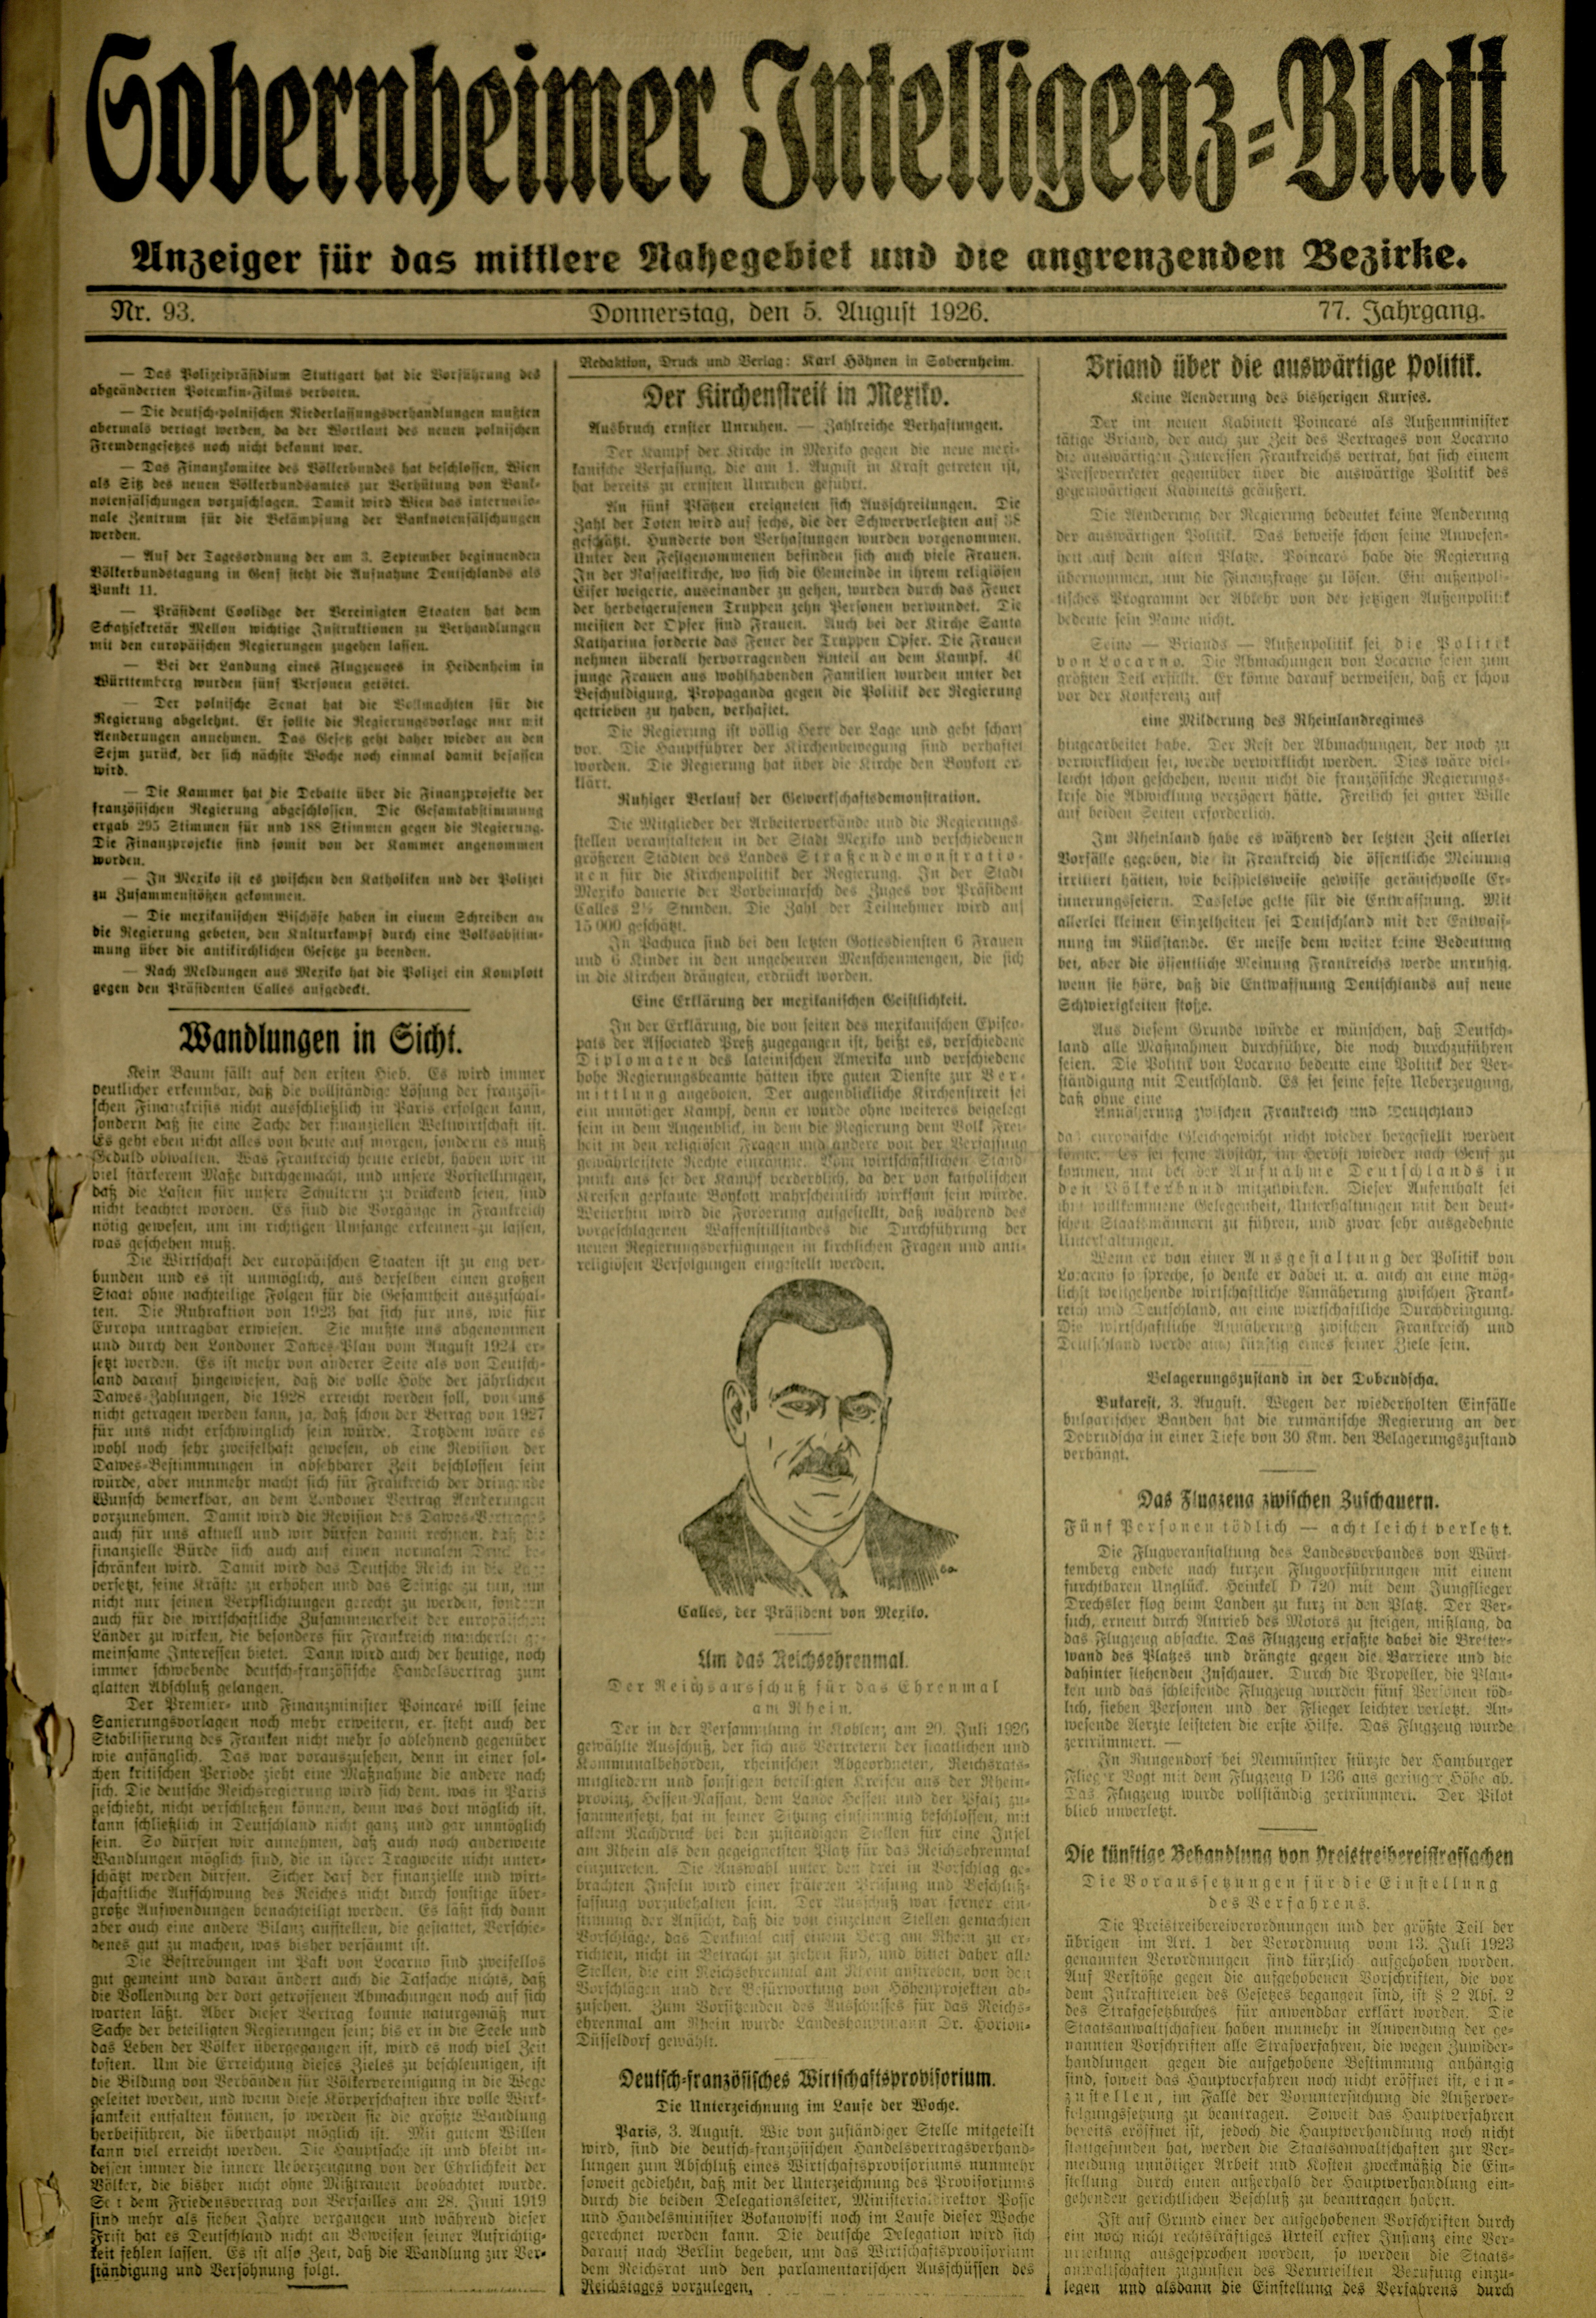 Zeitung: Sobernheimer Intelligenzblatt; August 1926, Jg. 73 Nr. 93 (Heimatmuseum Bad Sobernheim CC BY-NC-SA)